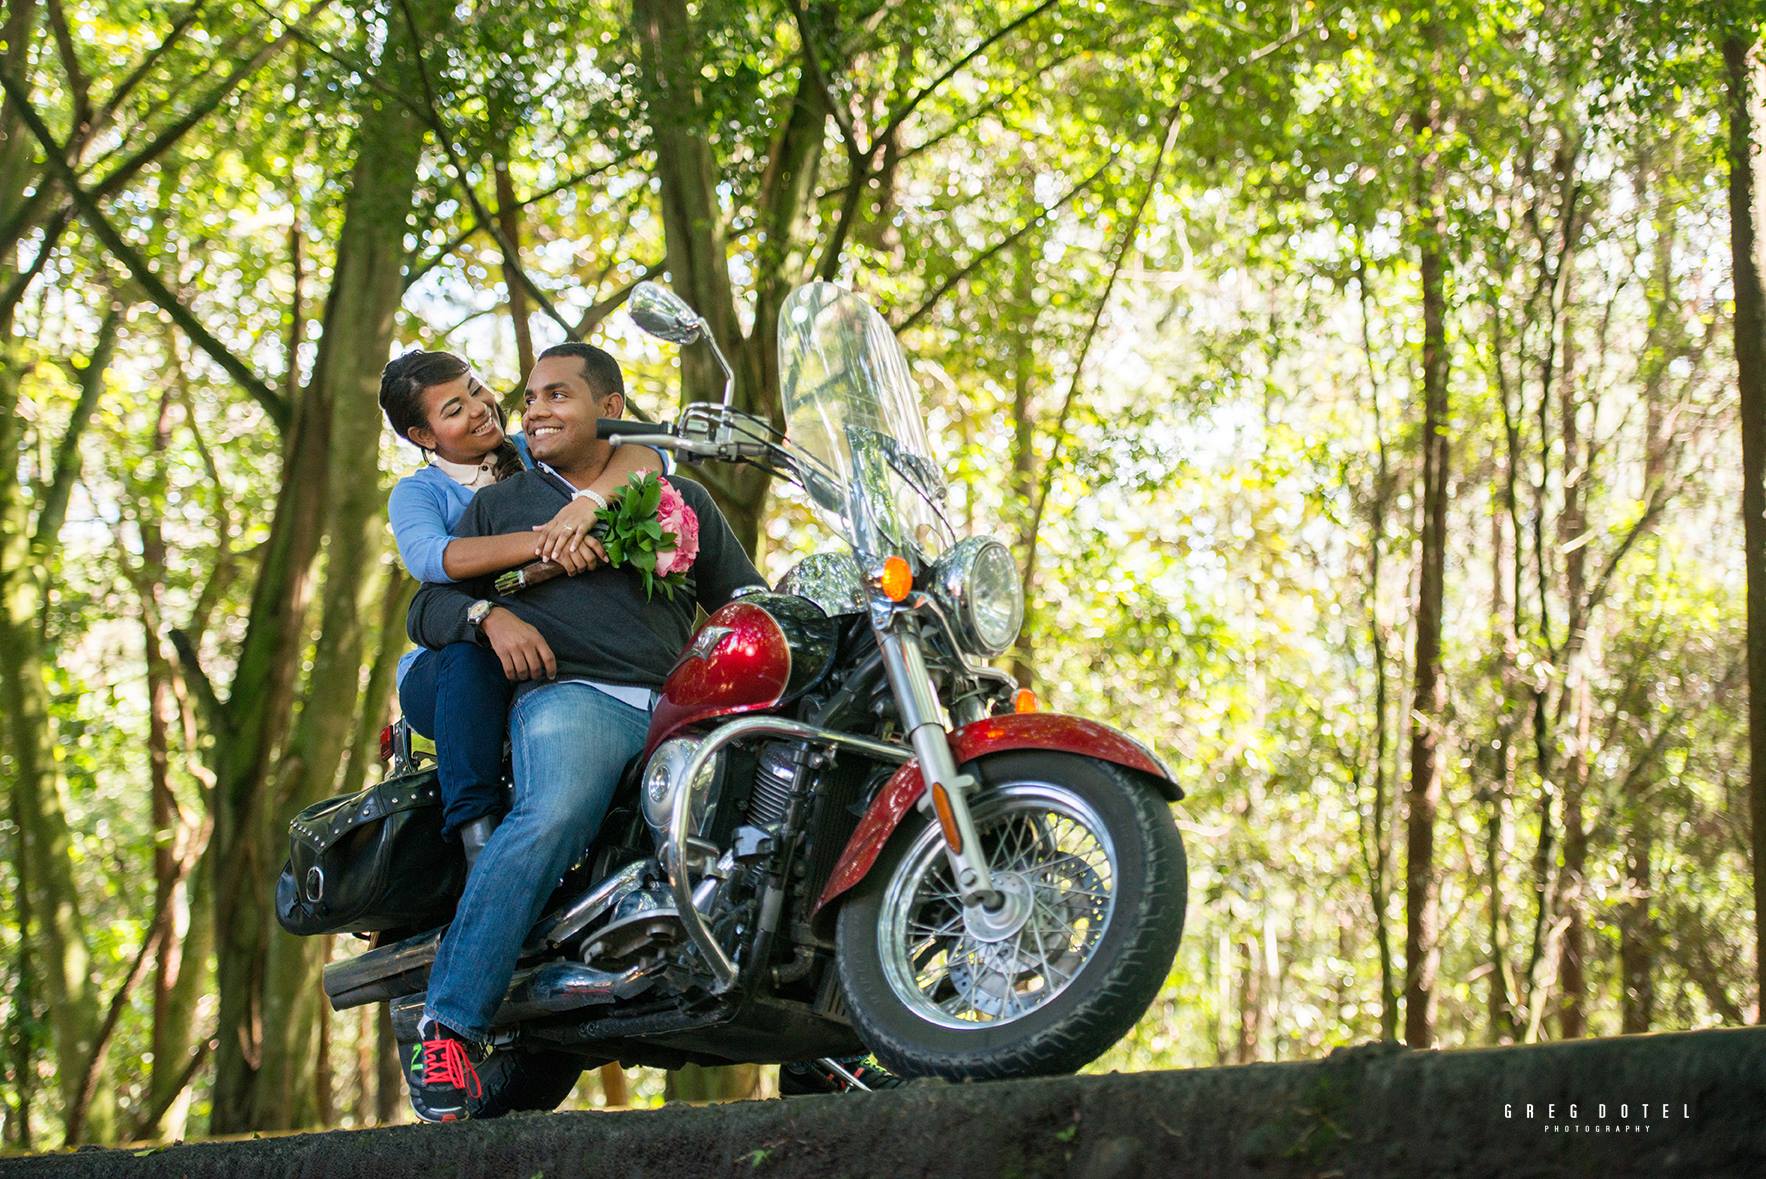 Fotografia de bodas y sesión de novios en motocicleta en Jarabacoa, República Dominicana por el fotografo dominicano greg dotel phorography